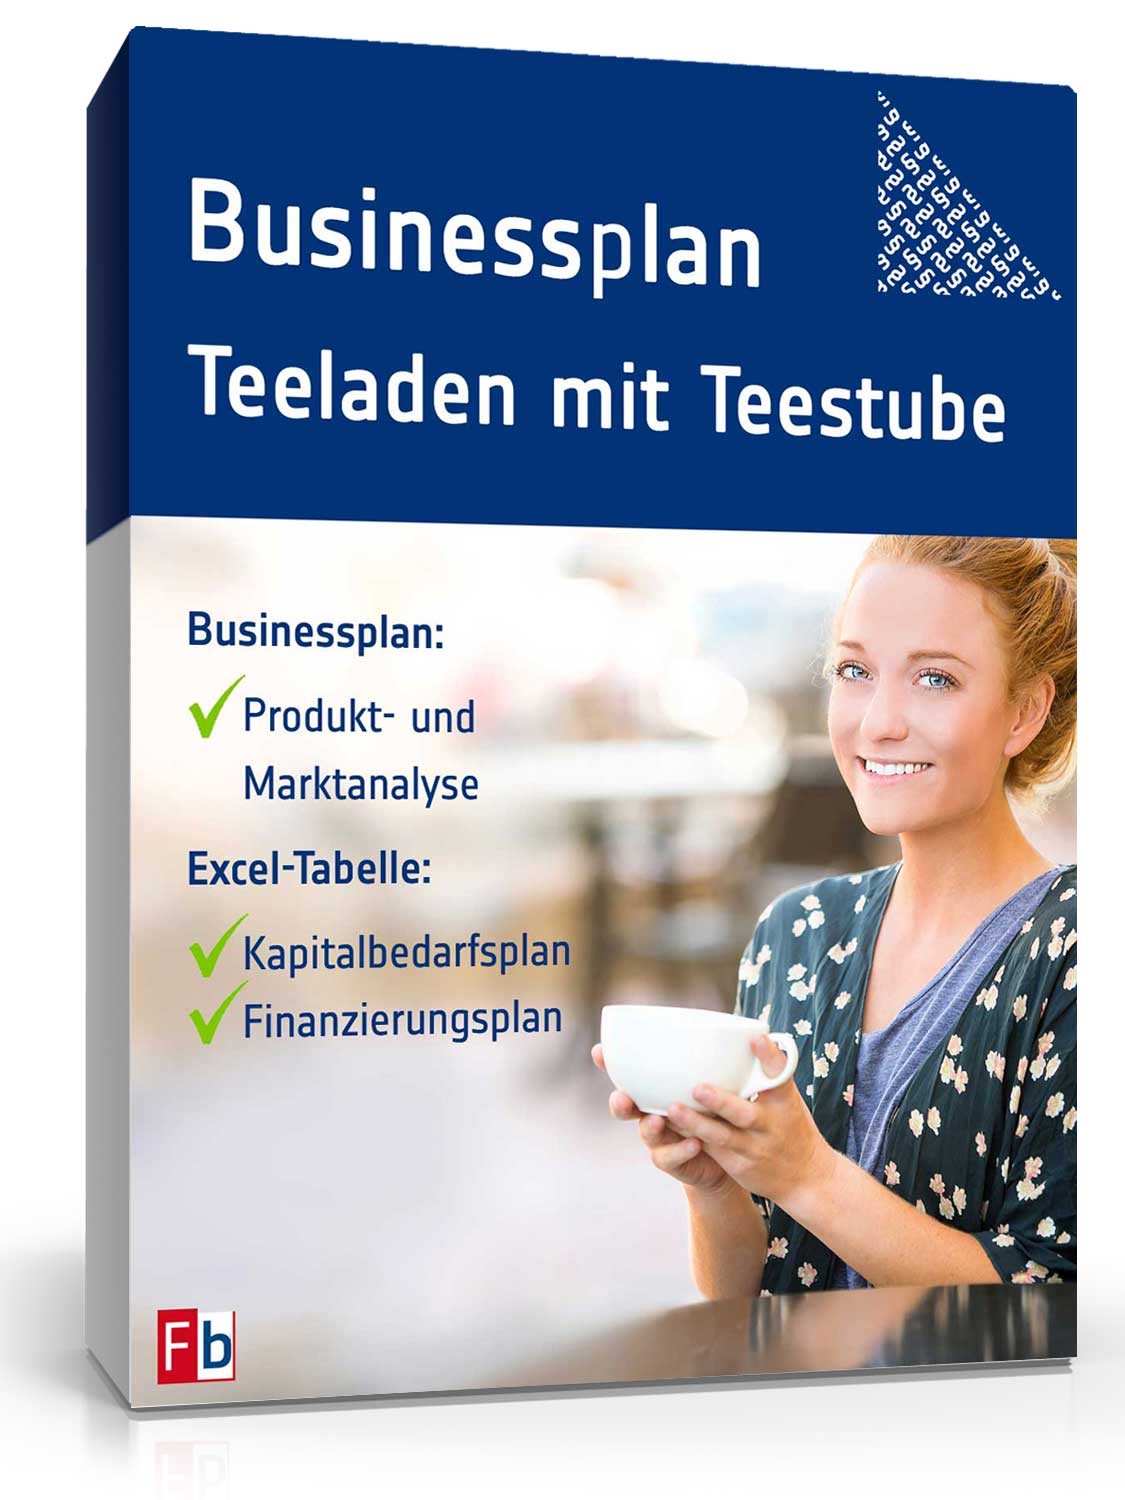 Hauptbild des Produkts: Businessplan Teeladen mit Teestube